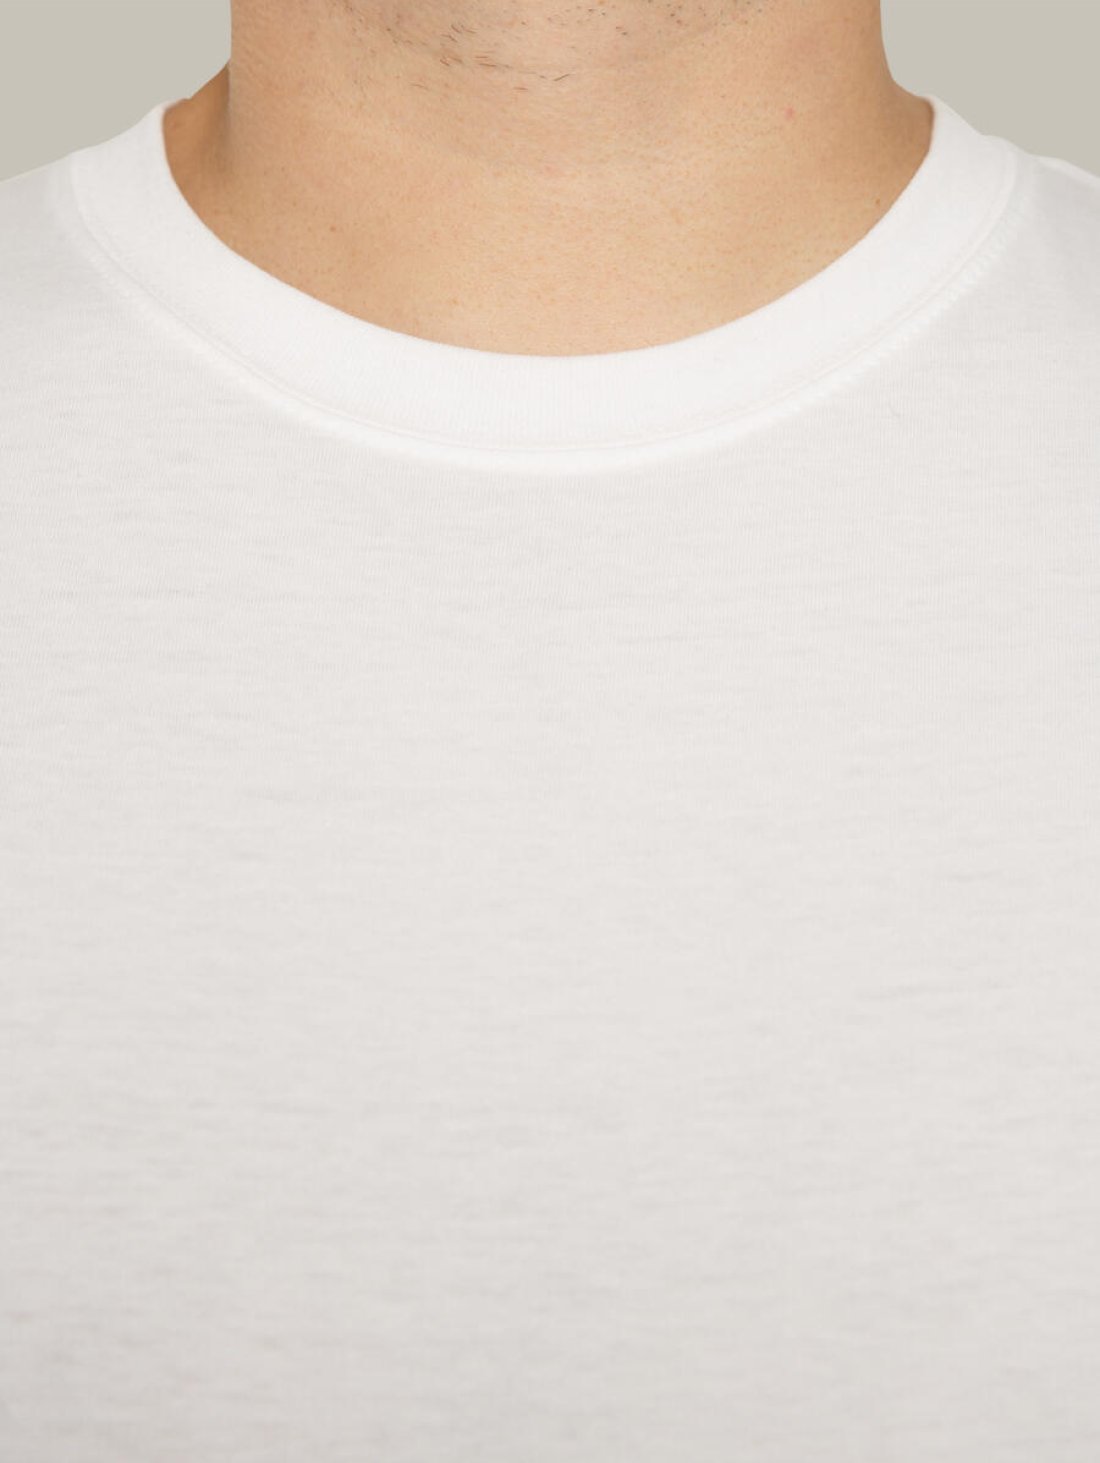 Чоловіча футболка, біла з принтом аватара Hopper 042